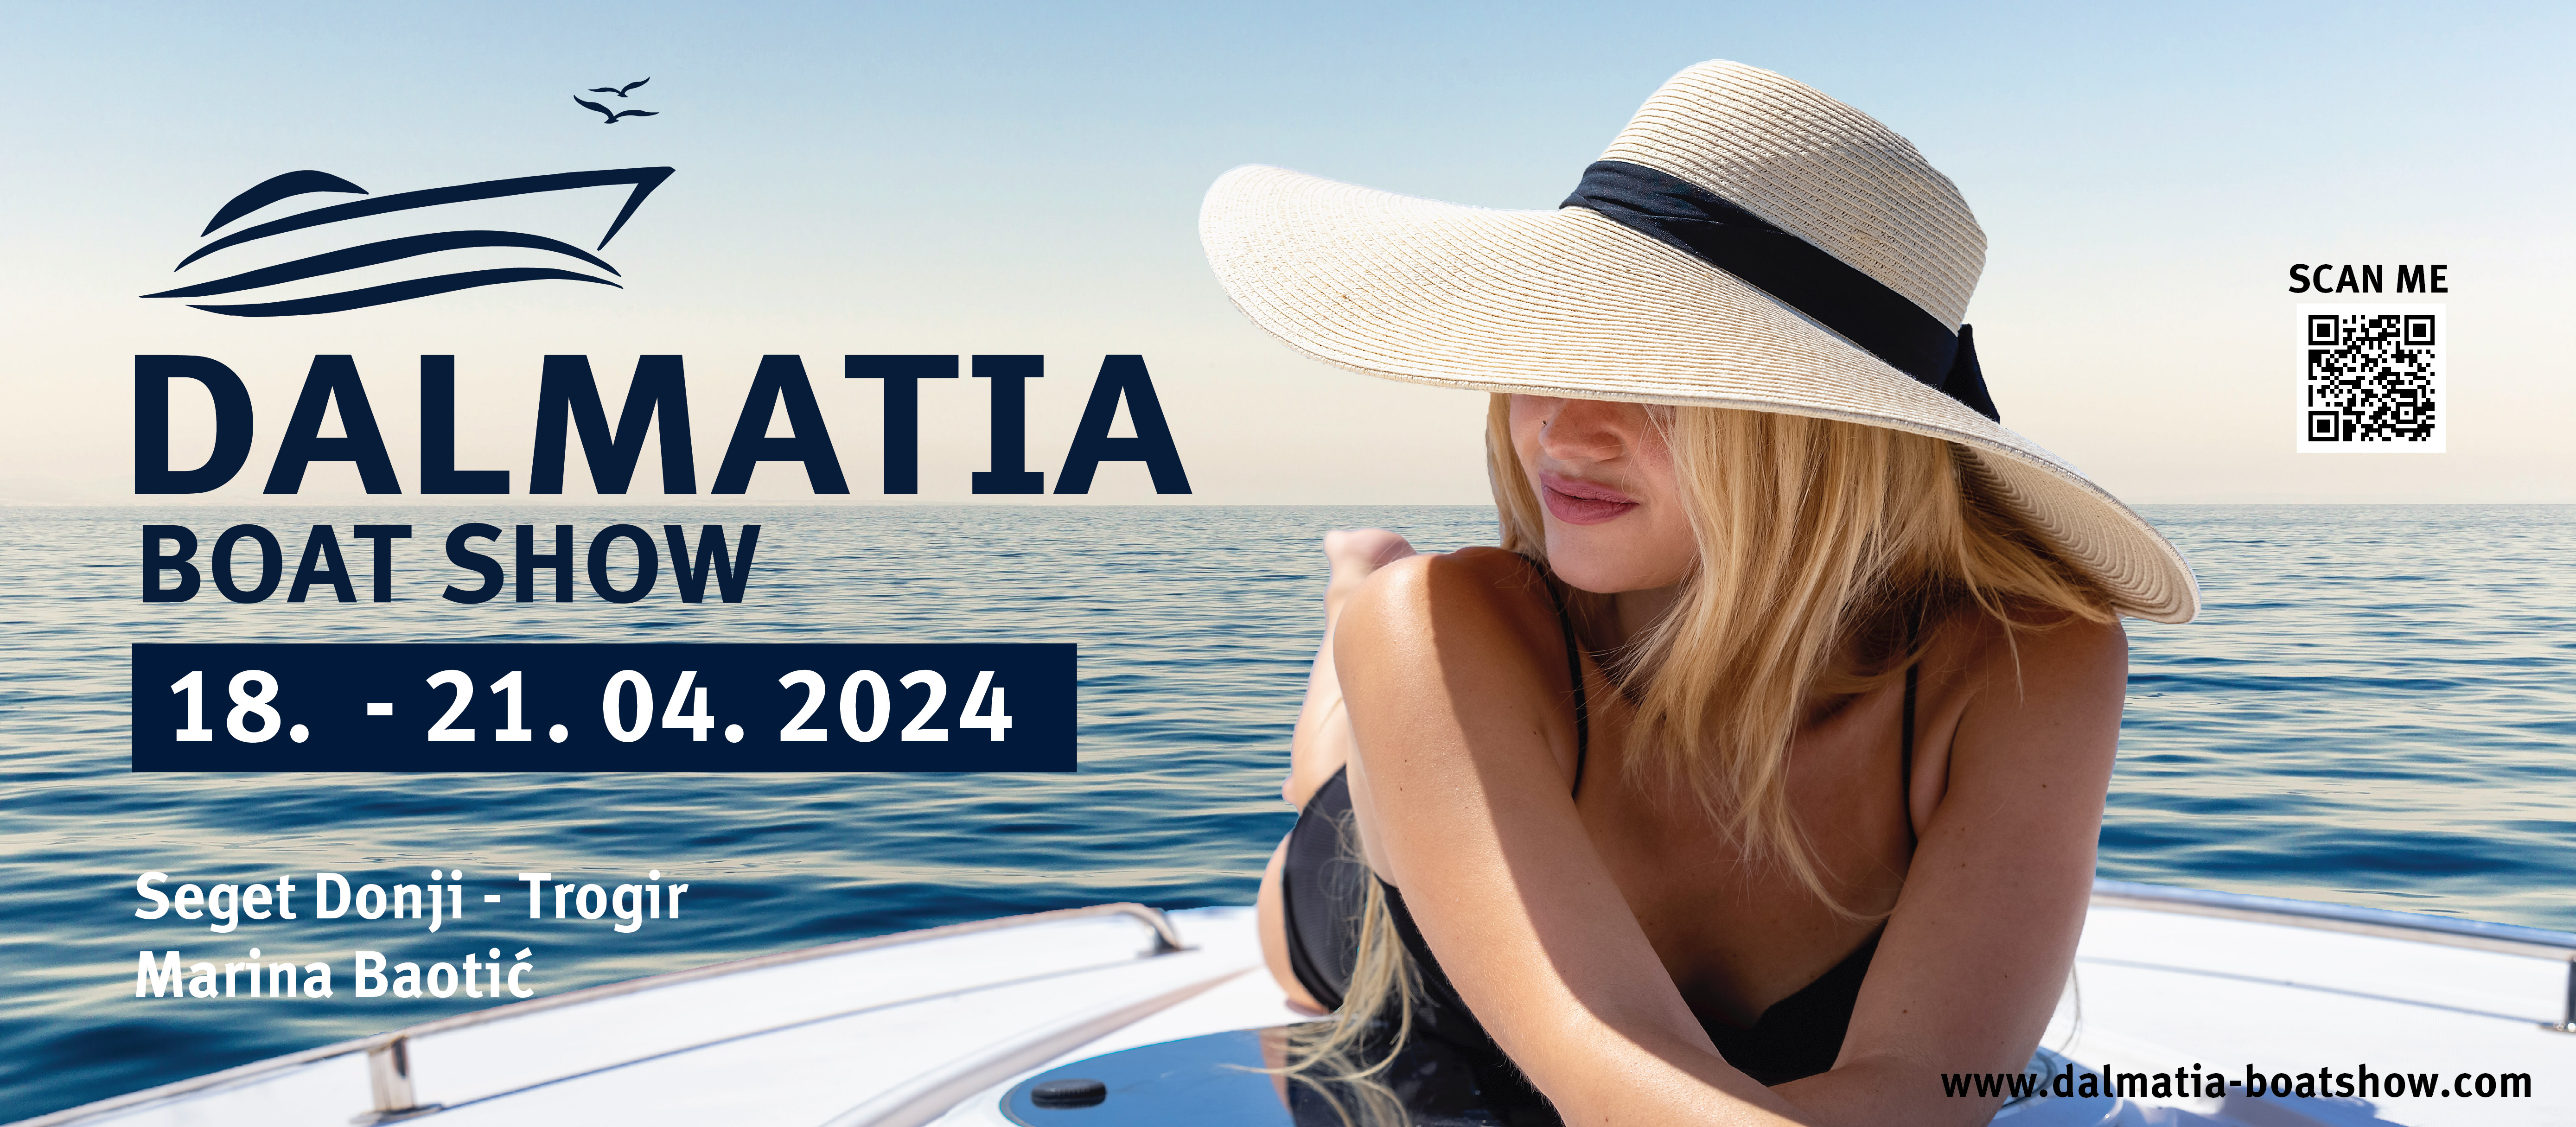 First Dalmatia Boat Show